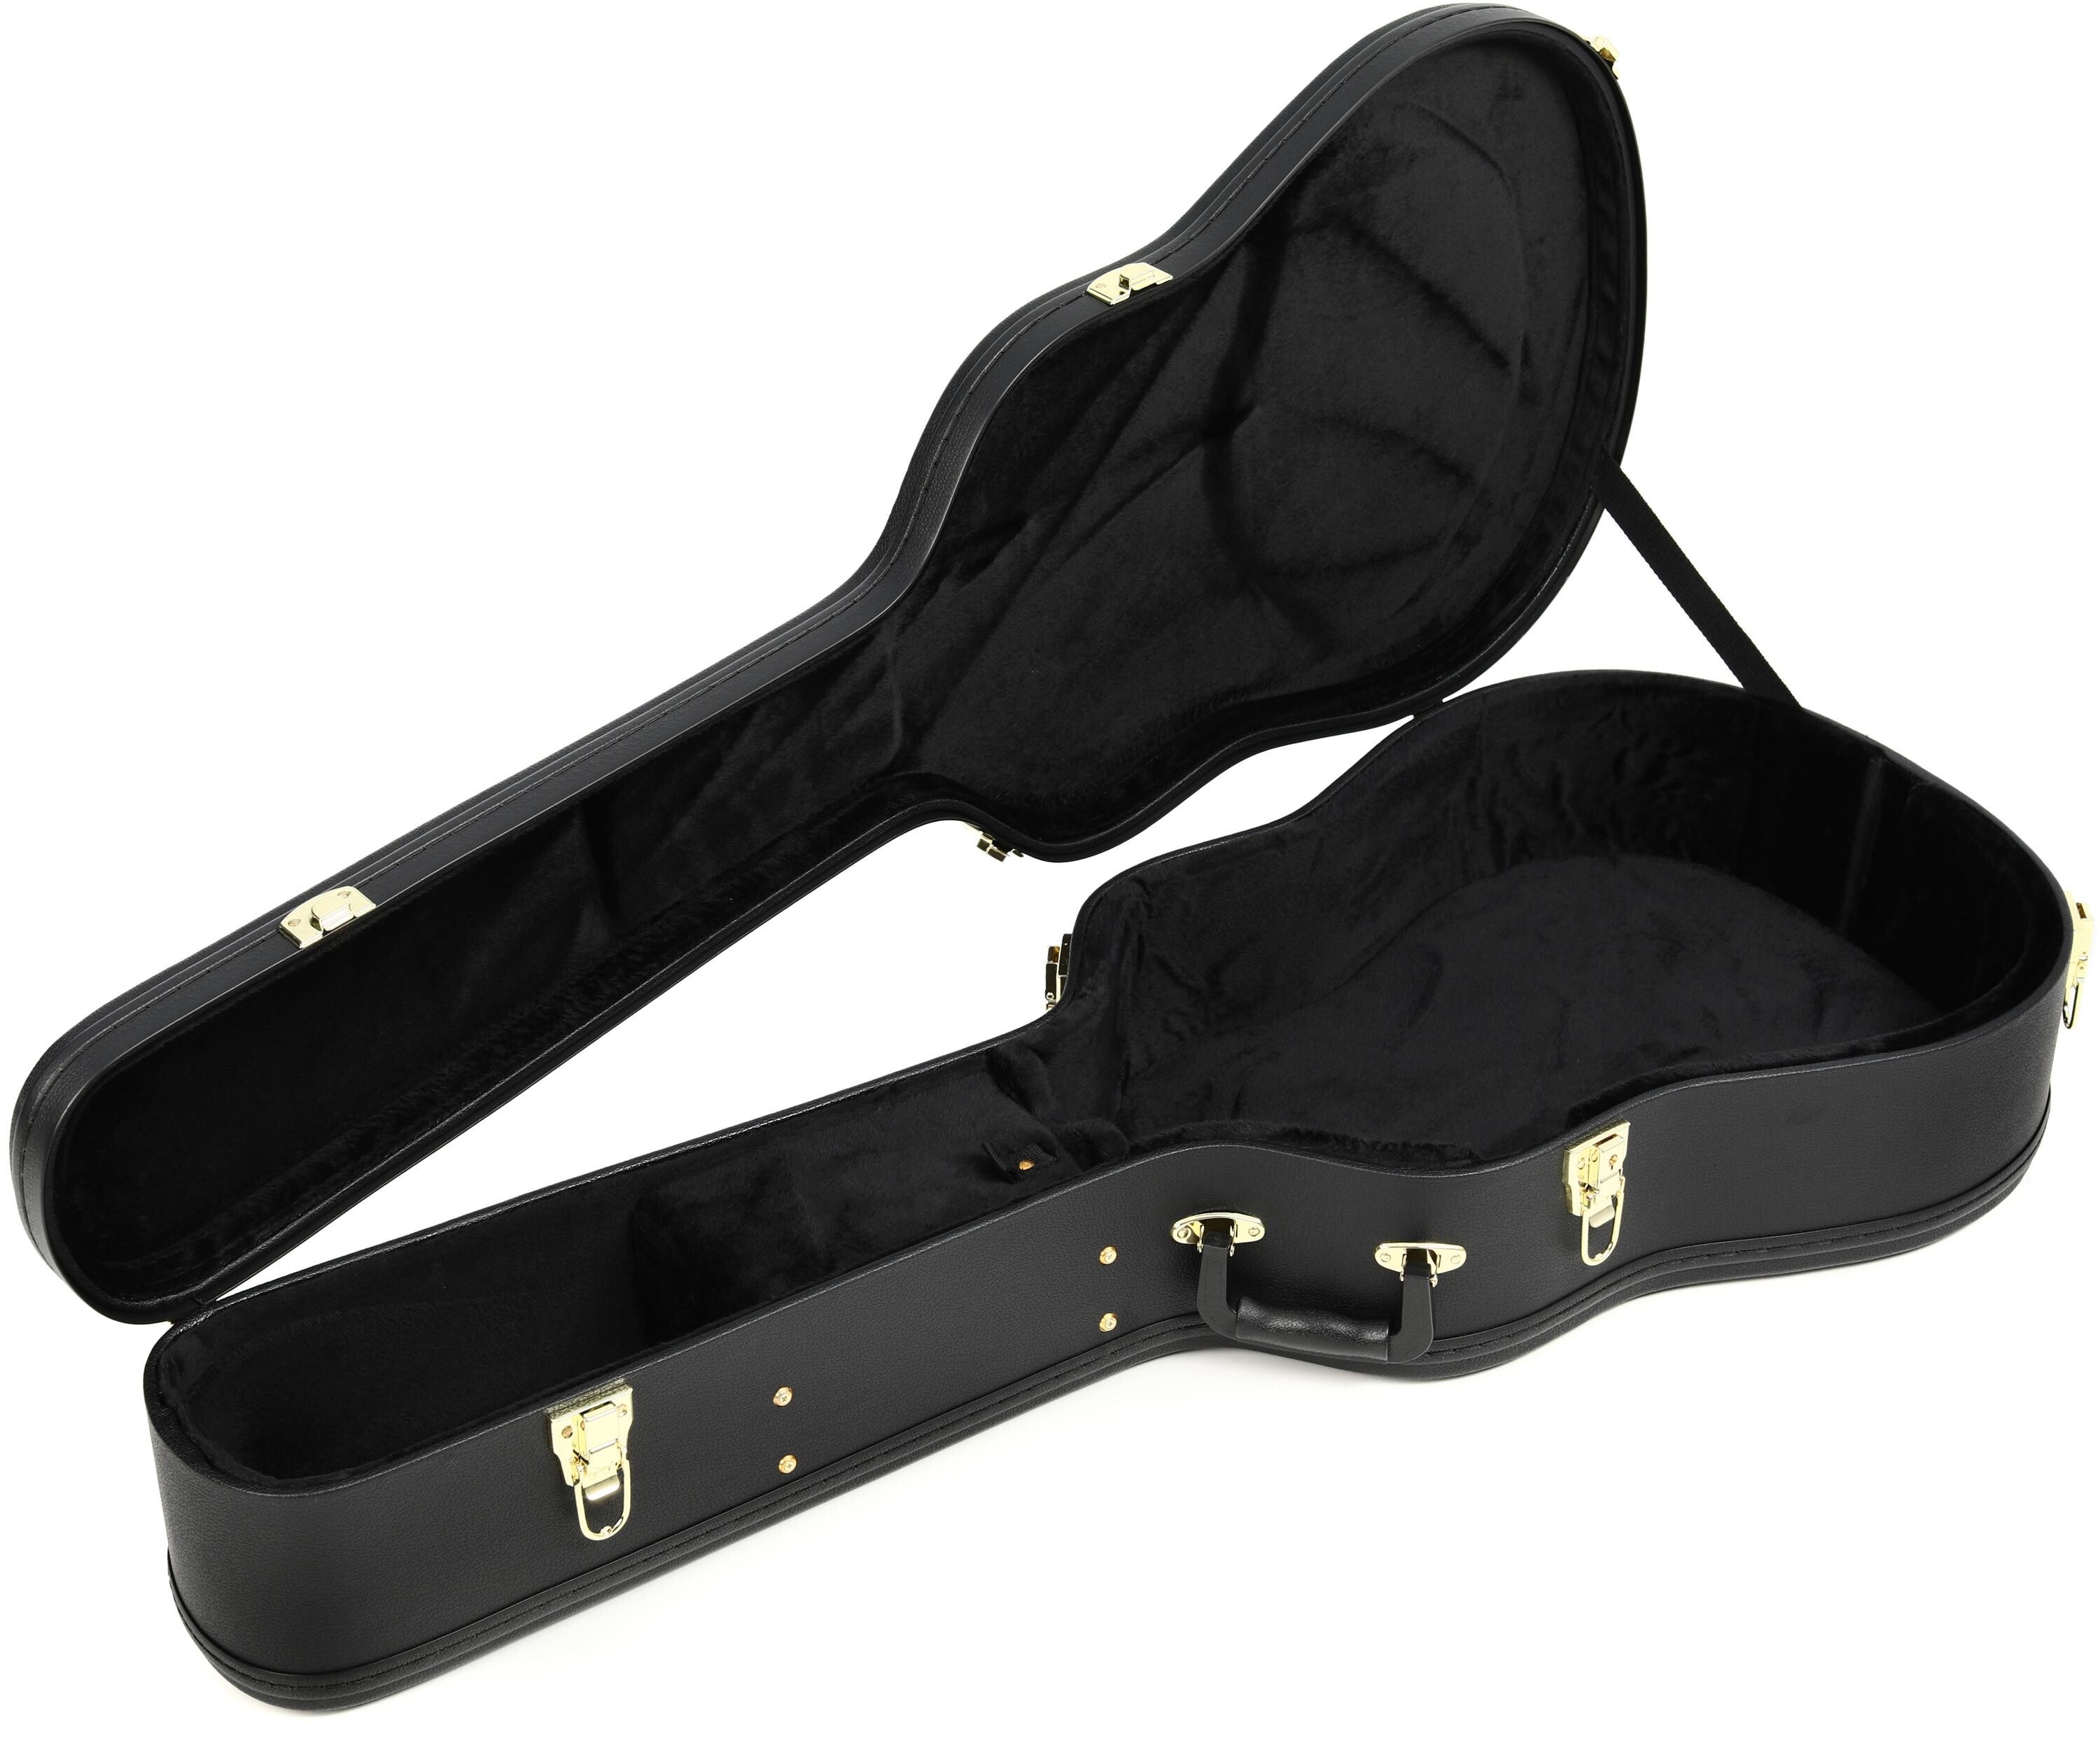 Bundled Item: Yamaha AG1-HC Hardshell Acoustic Guitar Case